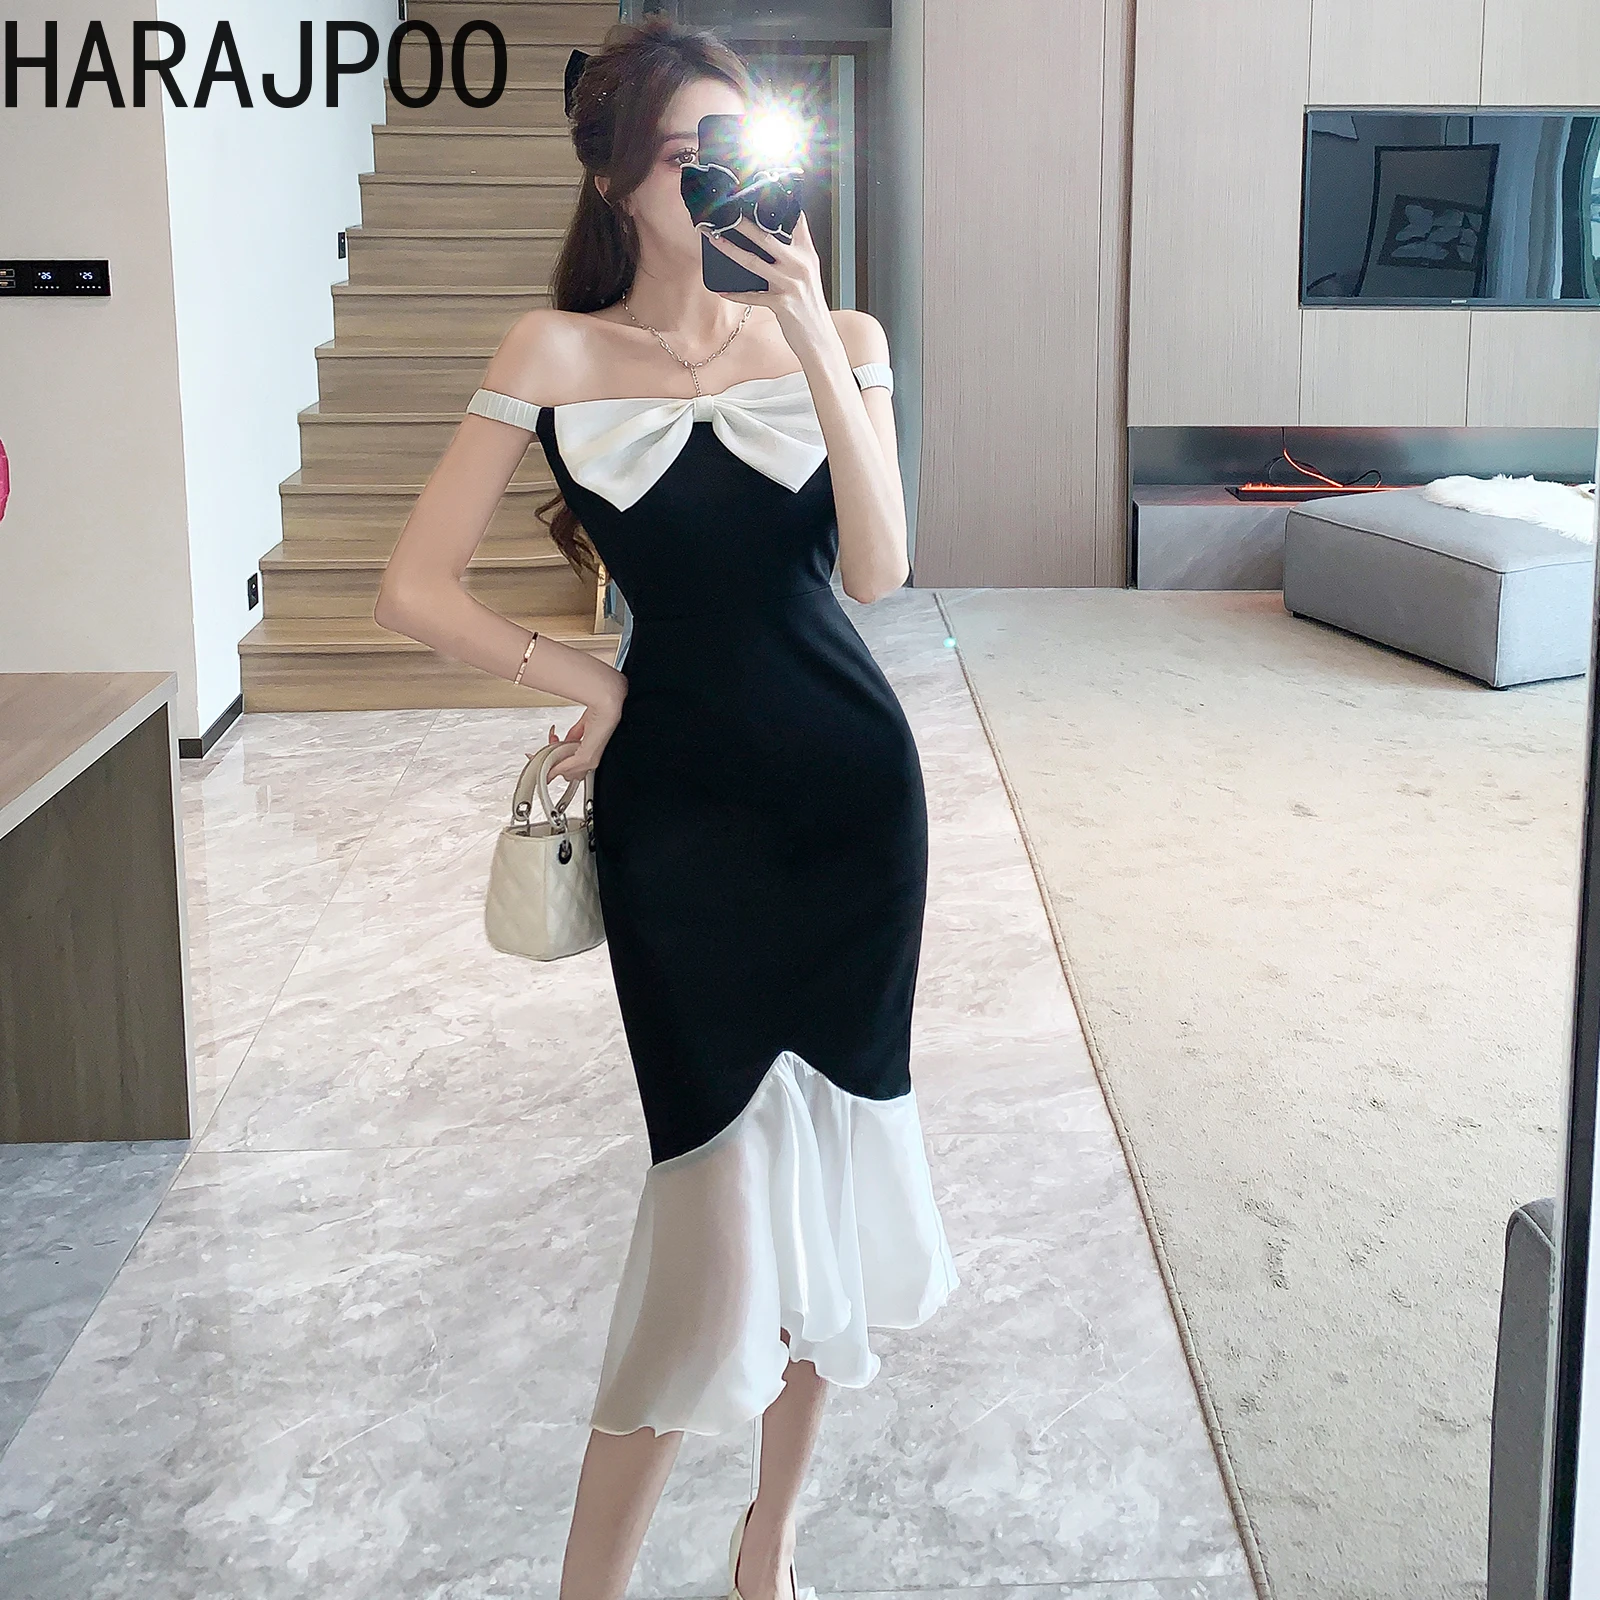 

Женское облегающее платье Harajpoo, контрастное вечернее платье средней длины с поясом в стиле Хепберн